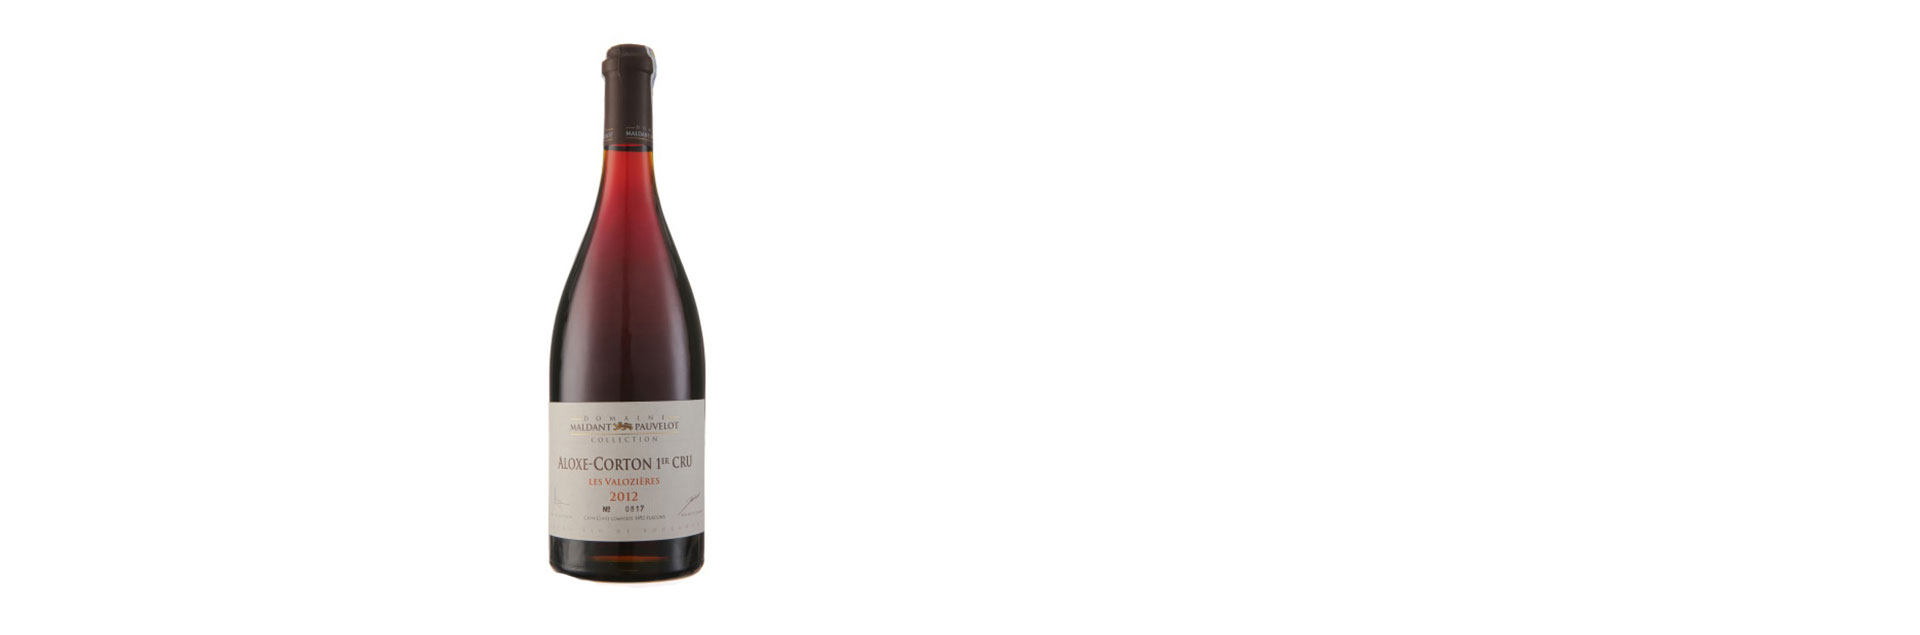 Rượu Vang Pháp Domaine Maldant - Pauvelot - Aloxe Corton 2012